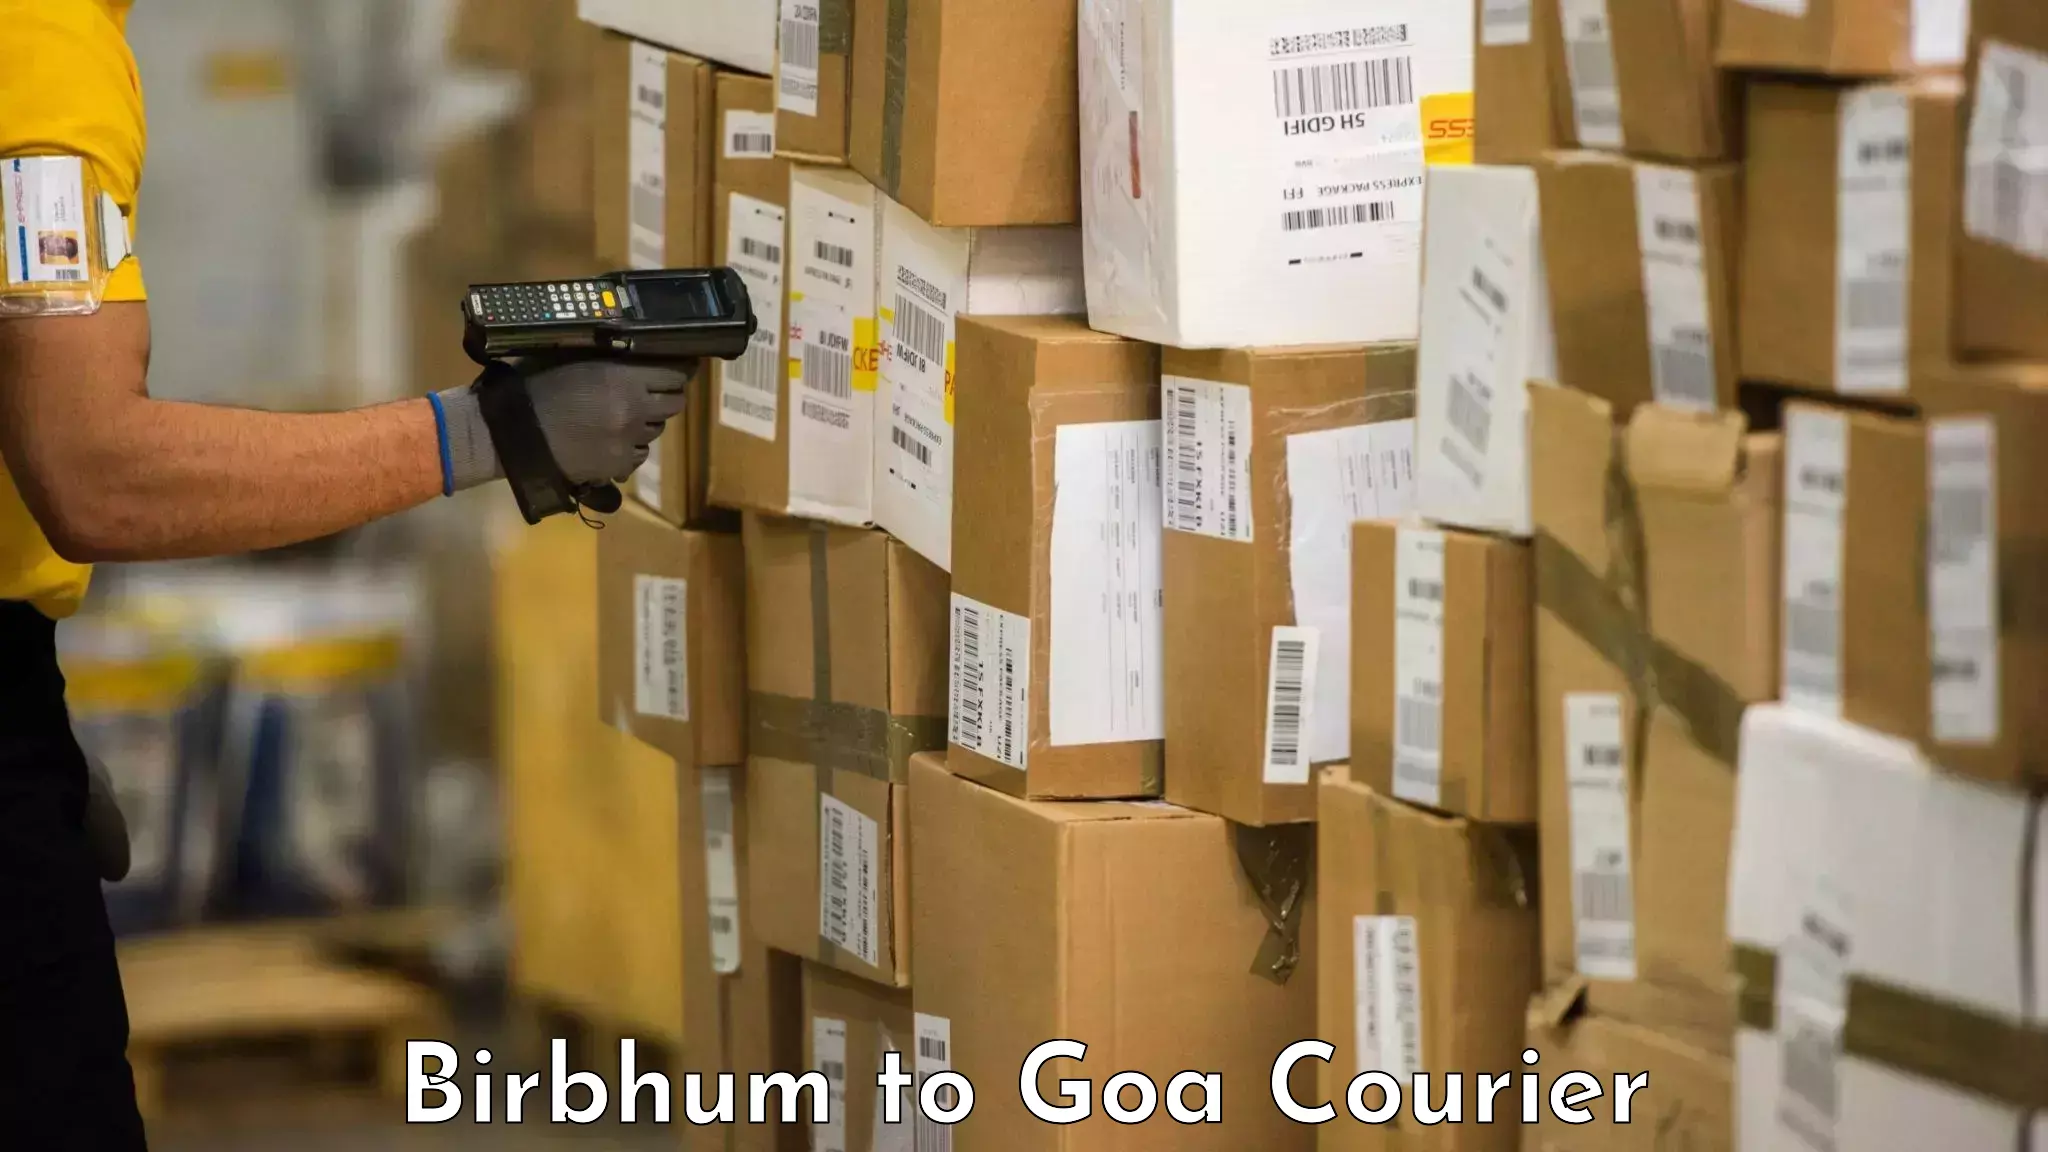 Baggage transport scheduler Birbhum to IIT Goa